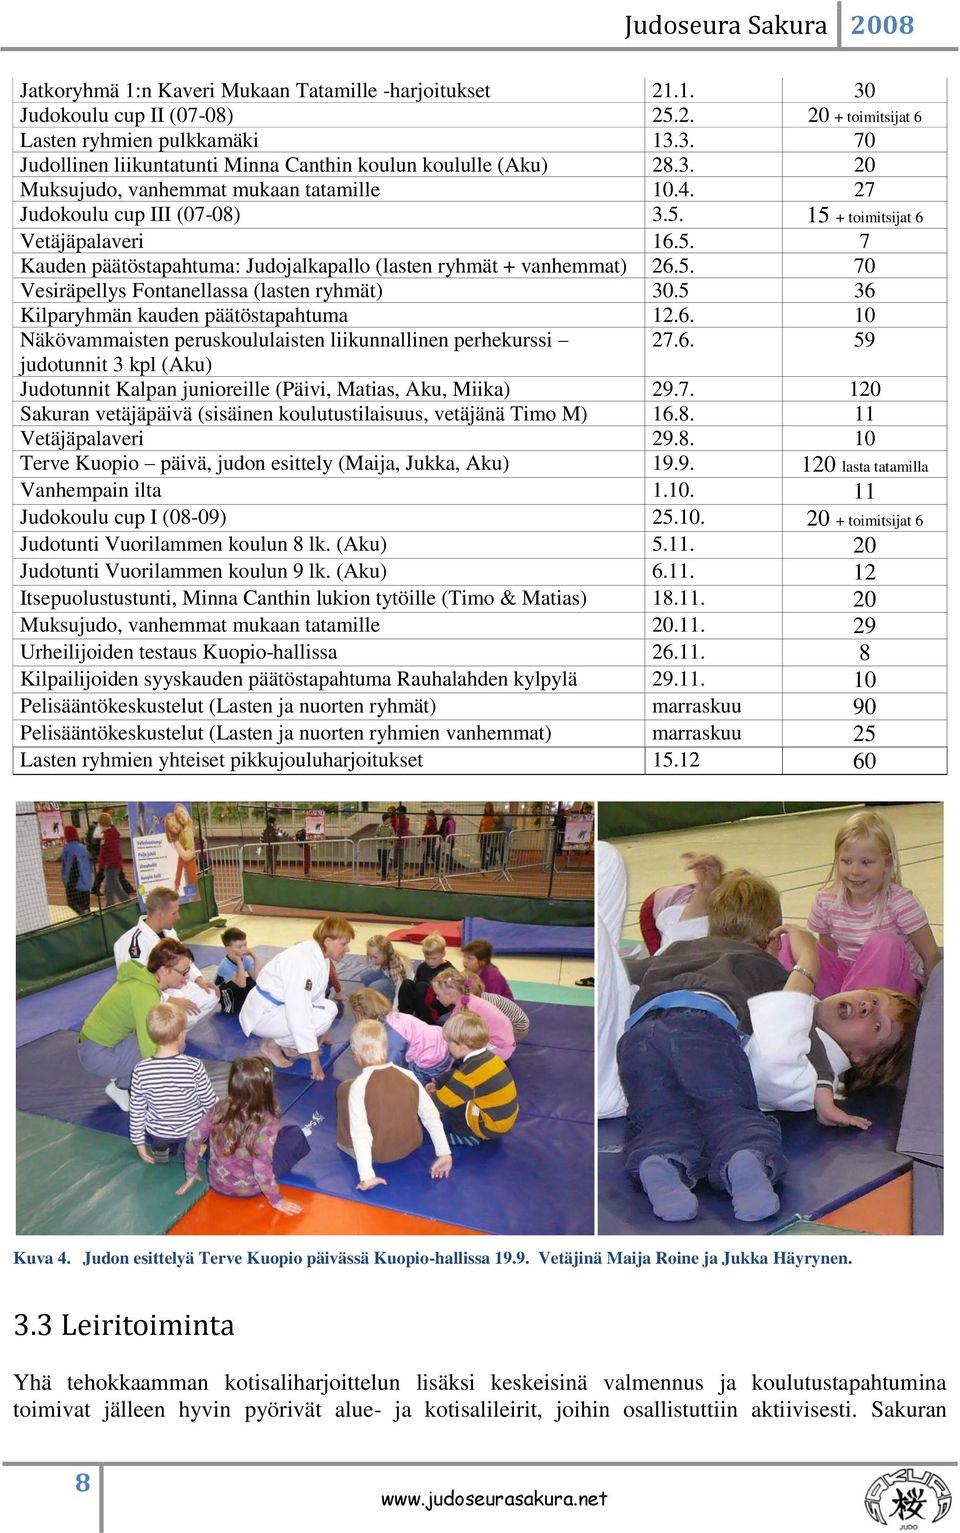 5 36 Kilparyhmän kauden päätöstapahtuma 12.6. 10 Näkövammaisten peruskoululaisten liikunnallinen perhekurssi 27.6. 59 judotunnit 3 kpl (Aku) Judotunnit Kalpan junioreille (Päivi, Matias, Aku, Miika) 29.